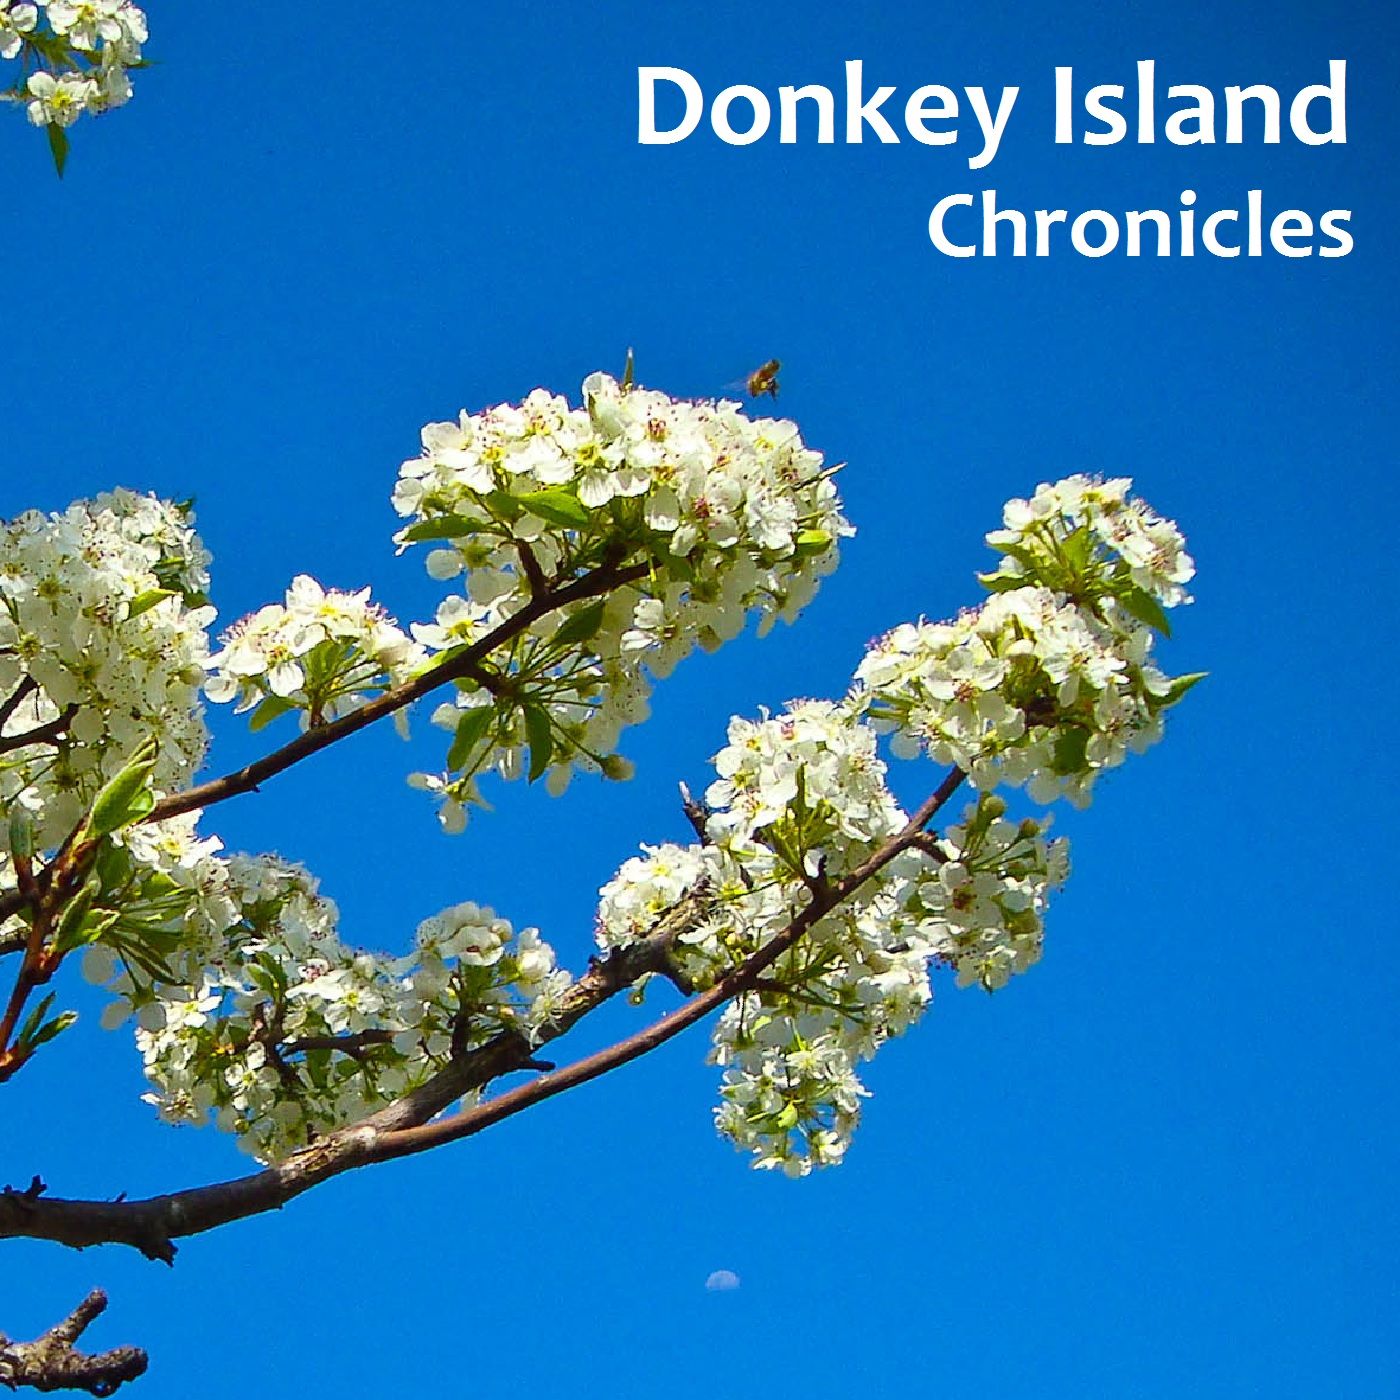 Donkey Island Chronicles